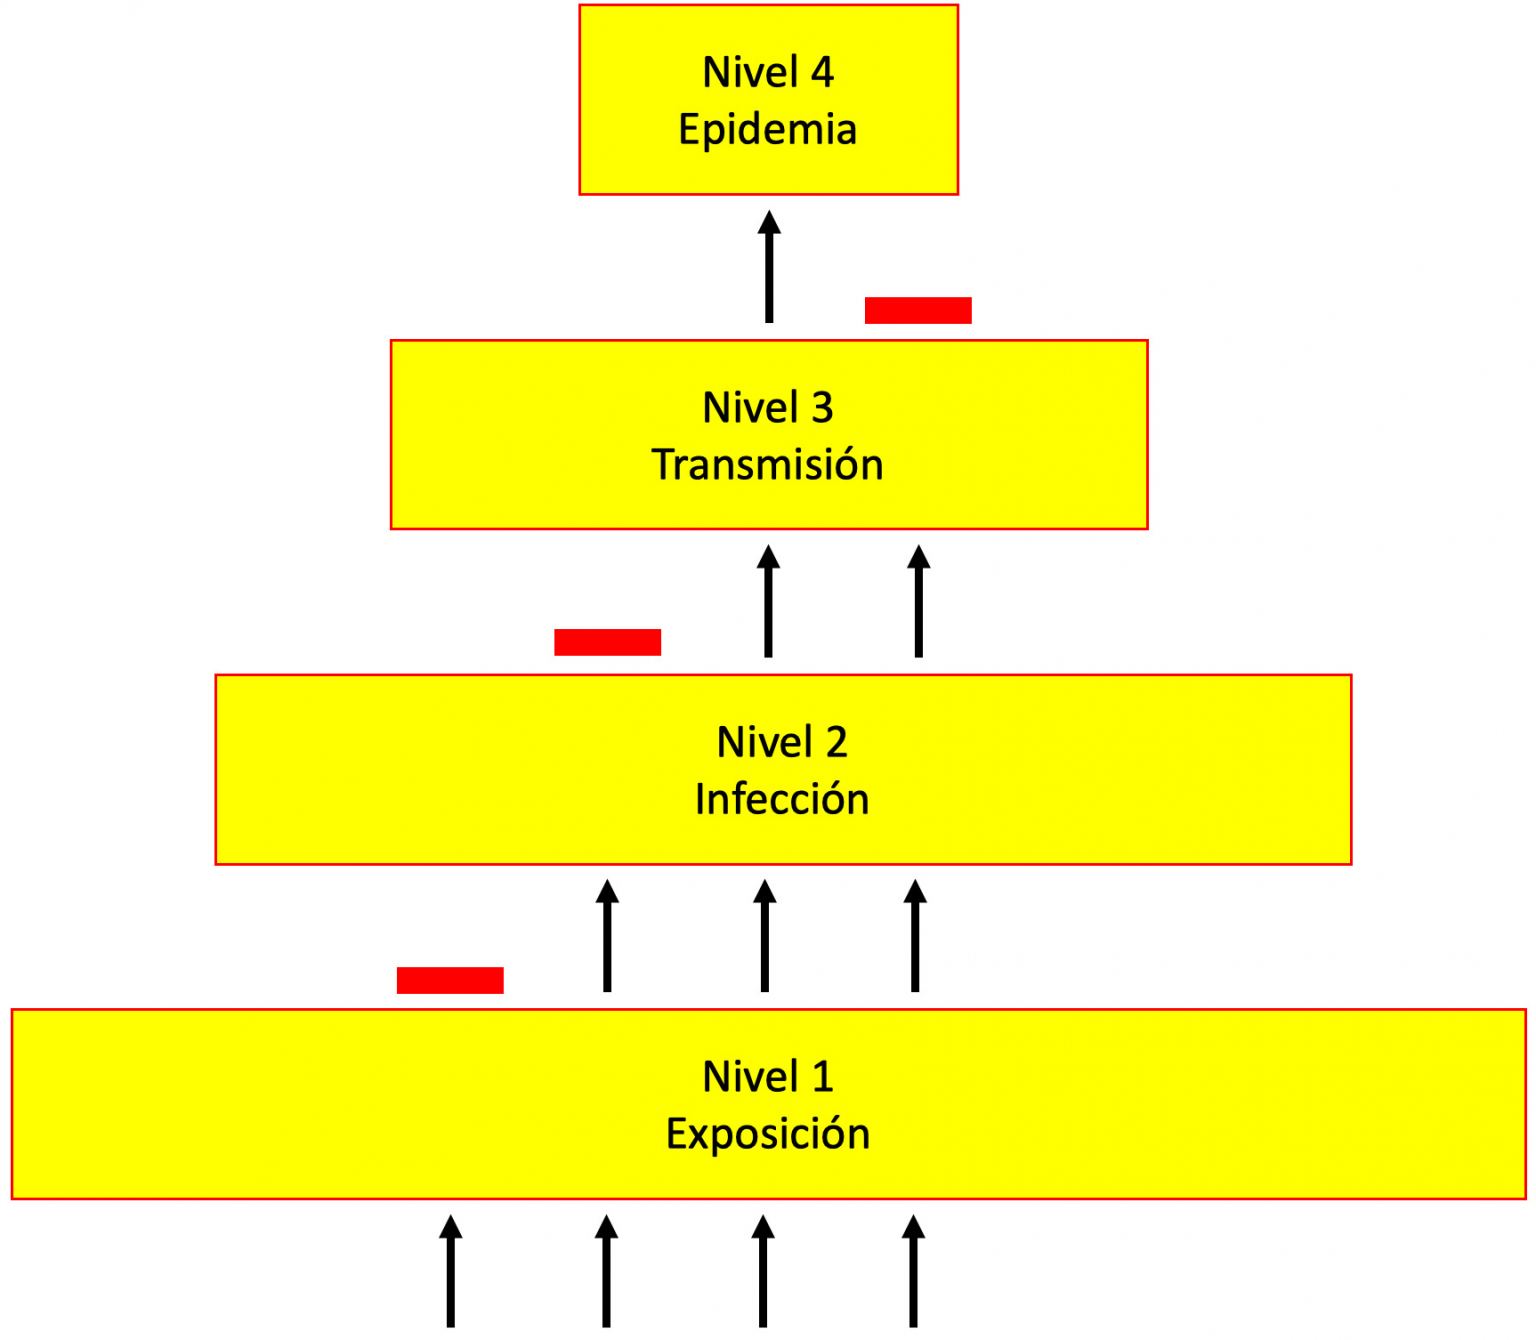 FIGURA 1. NIVELES de interacción entre virus y hospedero. Algunos virus (flechas) alcanzan el nivel cuatro y otros son detenidos en diferentes niveles por barreras biológicas (barras rojas). Modificada de Woolhouse et al. (2012).